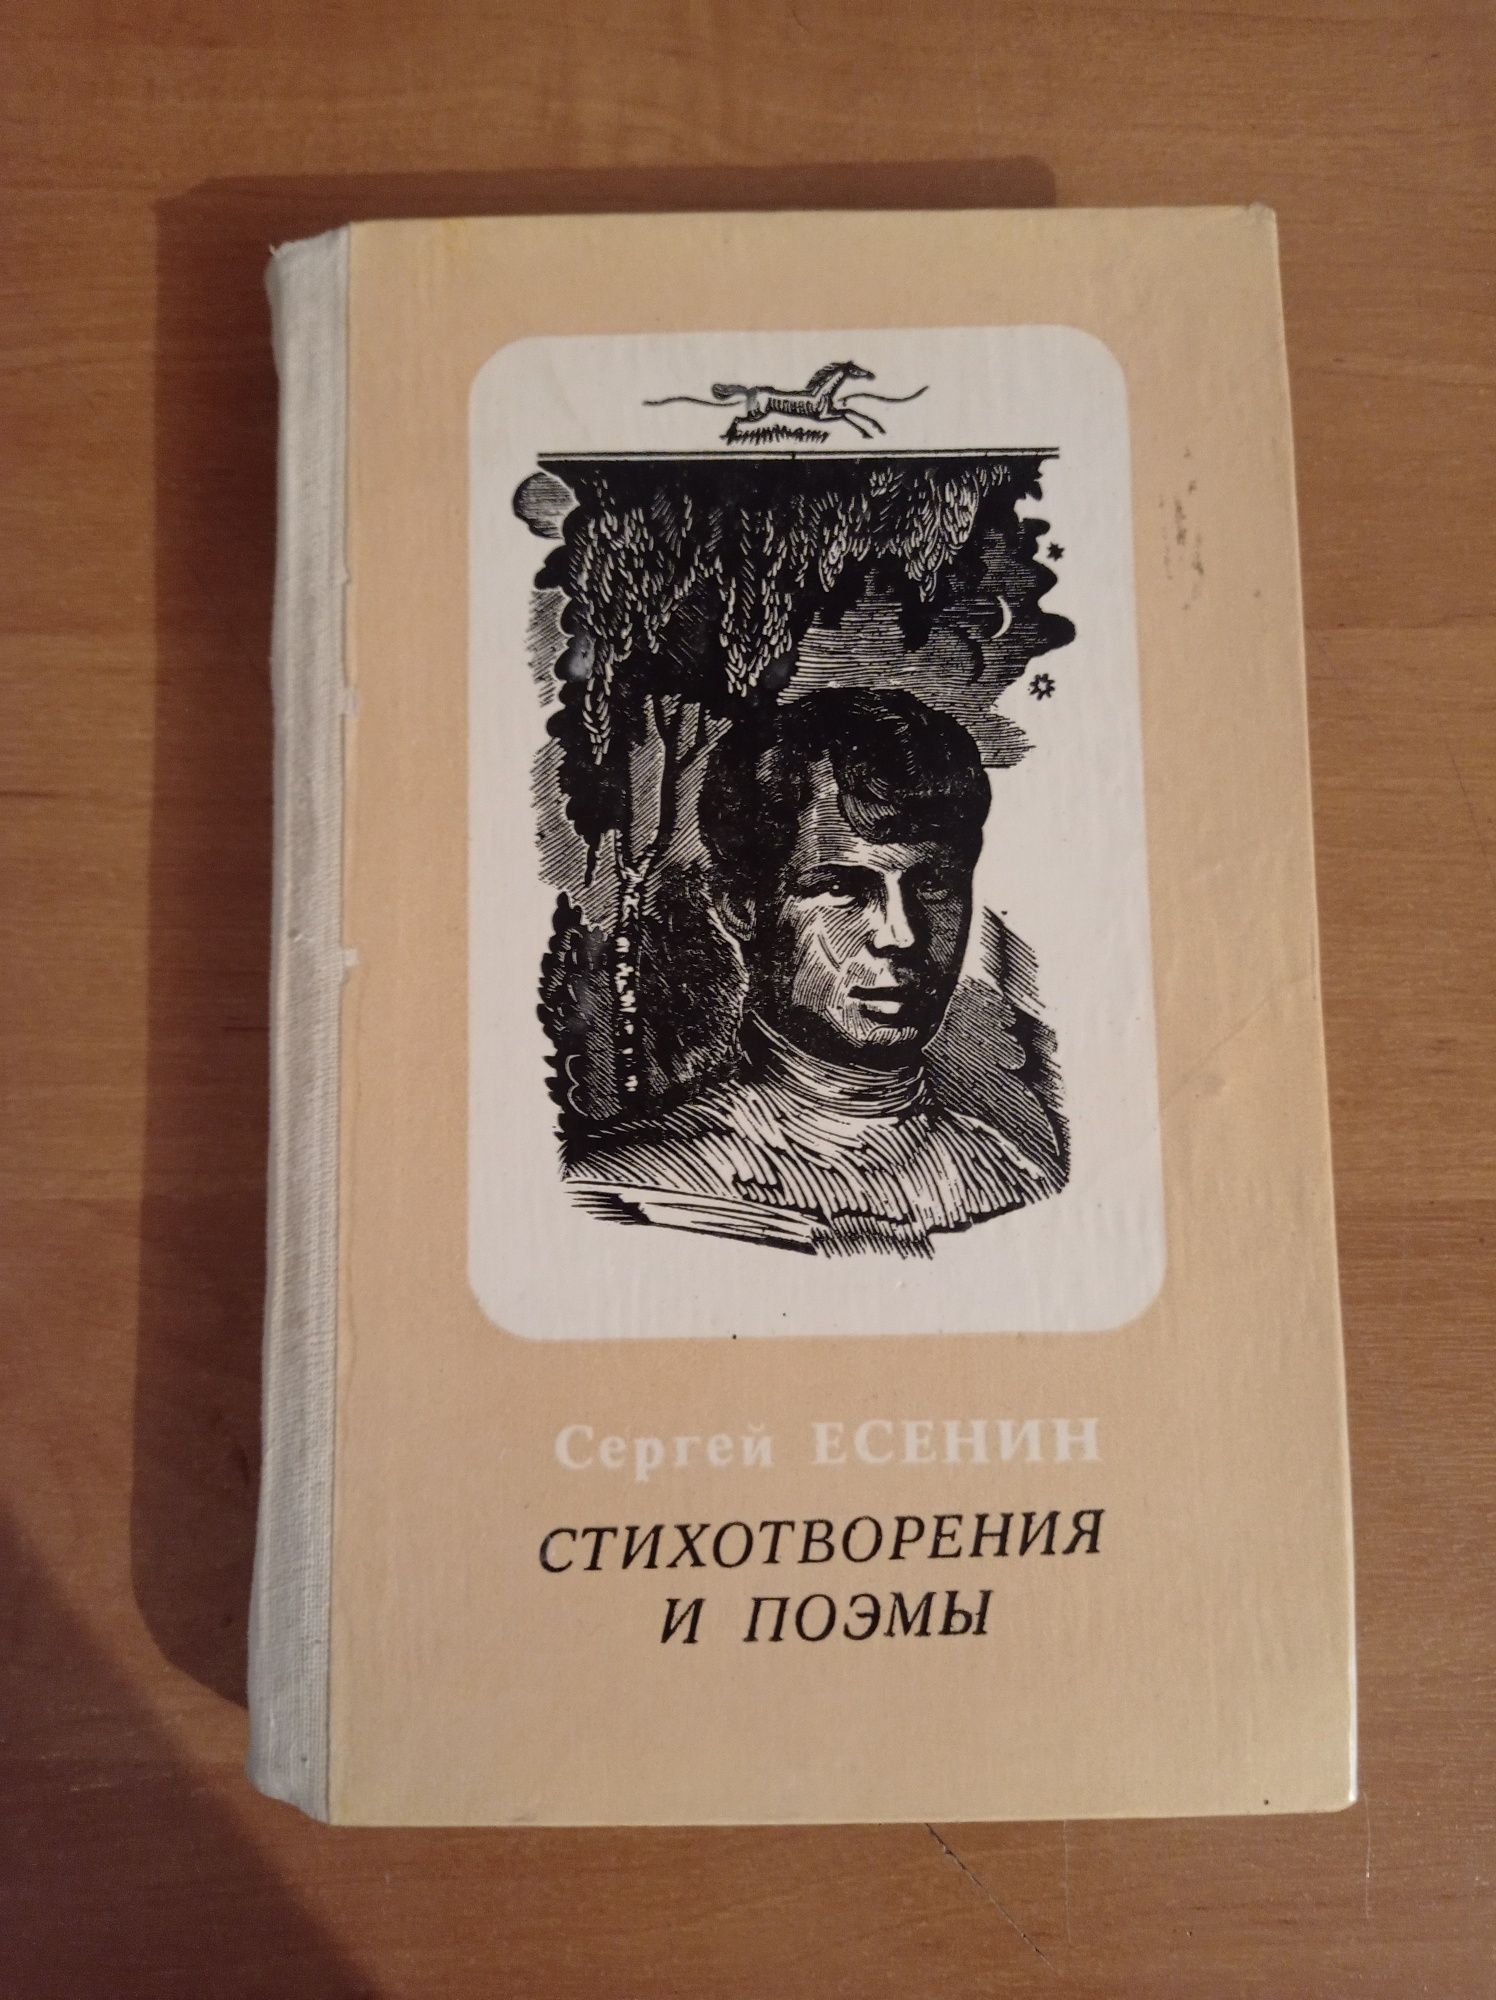 Сергей Есенин  стрихотворение и поэмы